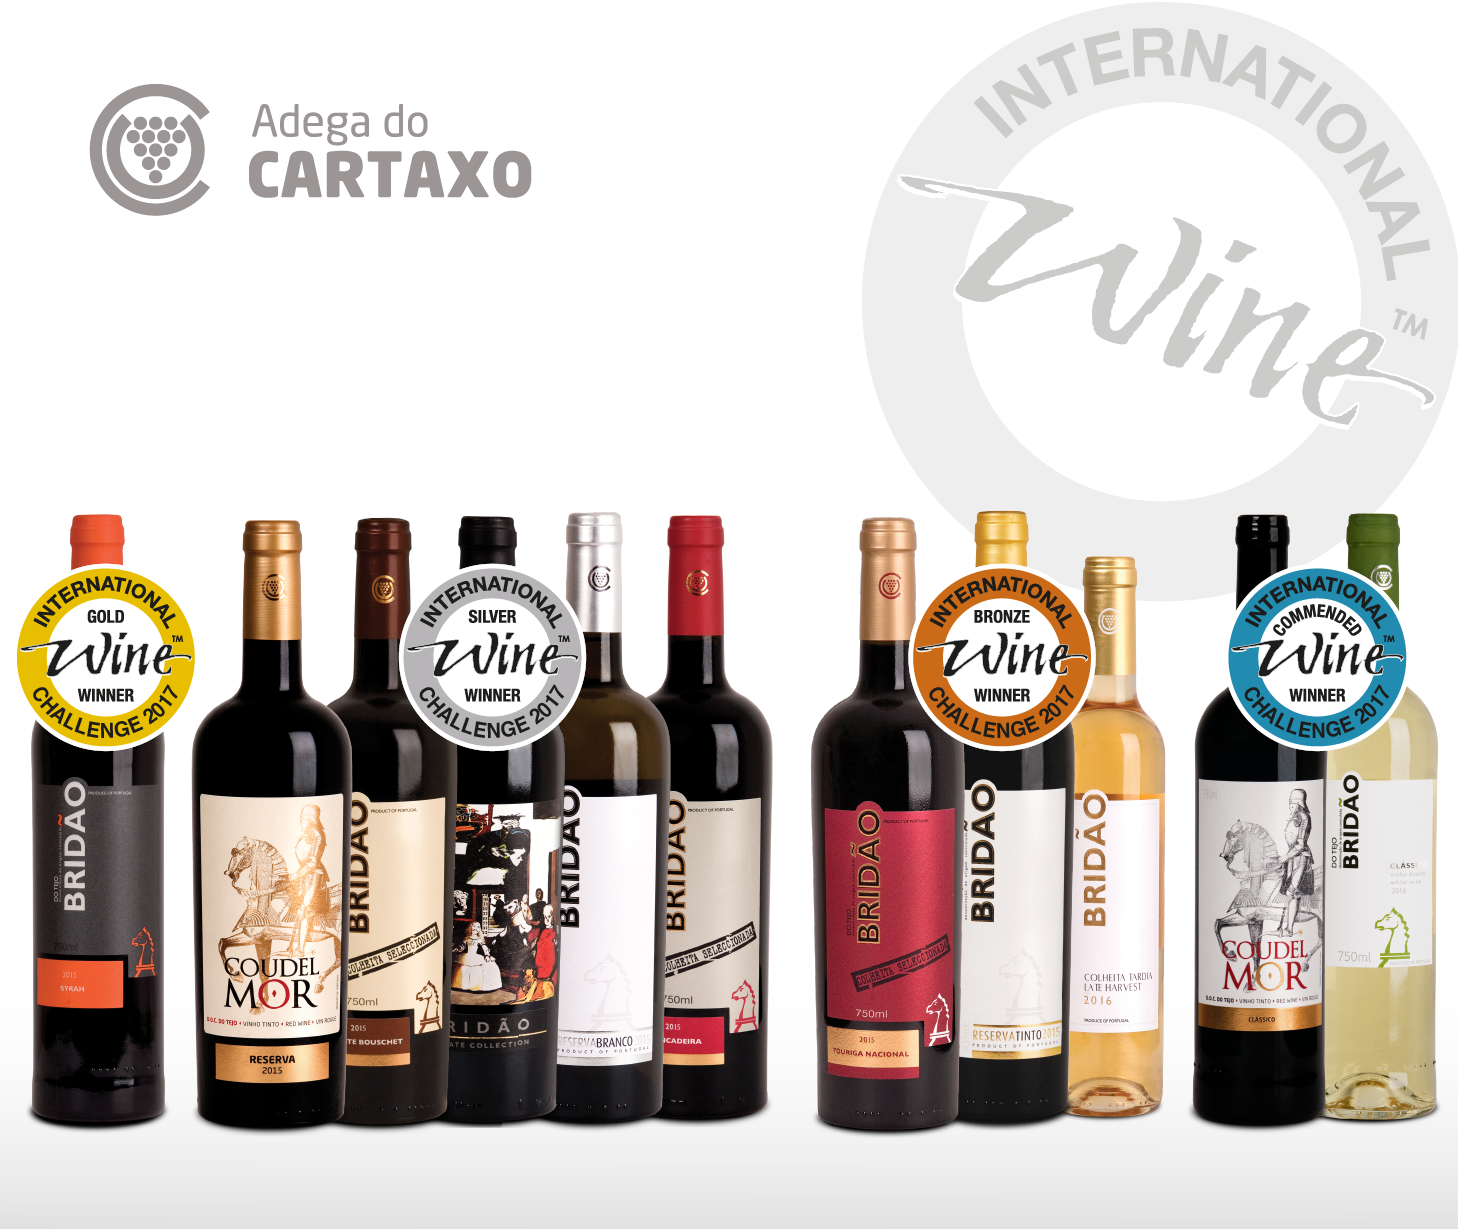 Adega do Cartaxo conquista onze medalhas no Concurso International Wine Challenge